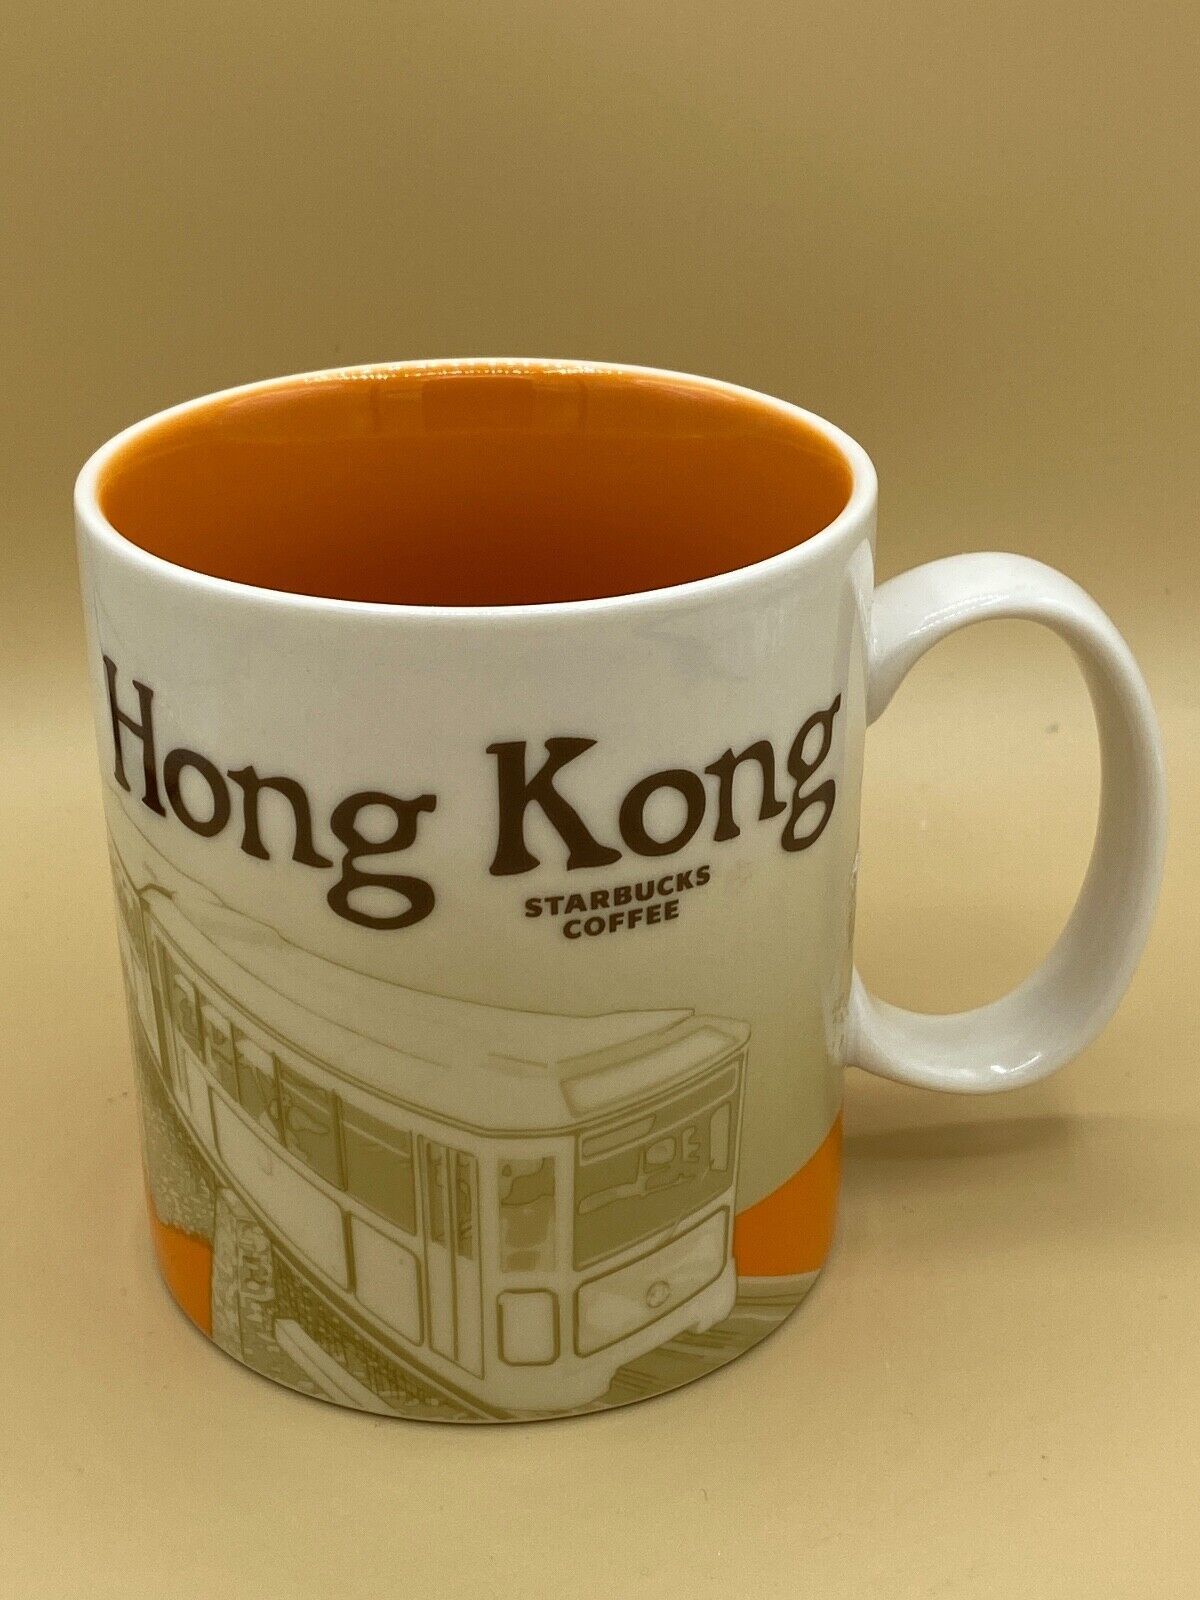 Primary image for Starbucks Coffee Hong Kong Mug 2019 Collector Series Global Icon City 16 oz